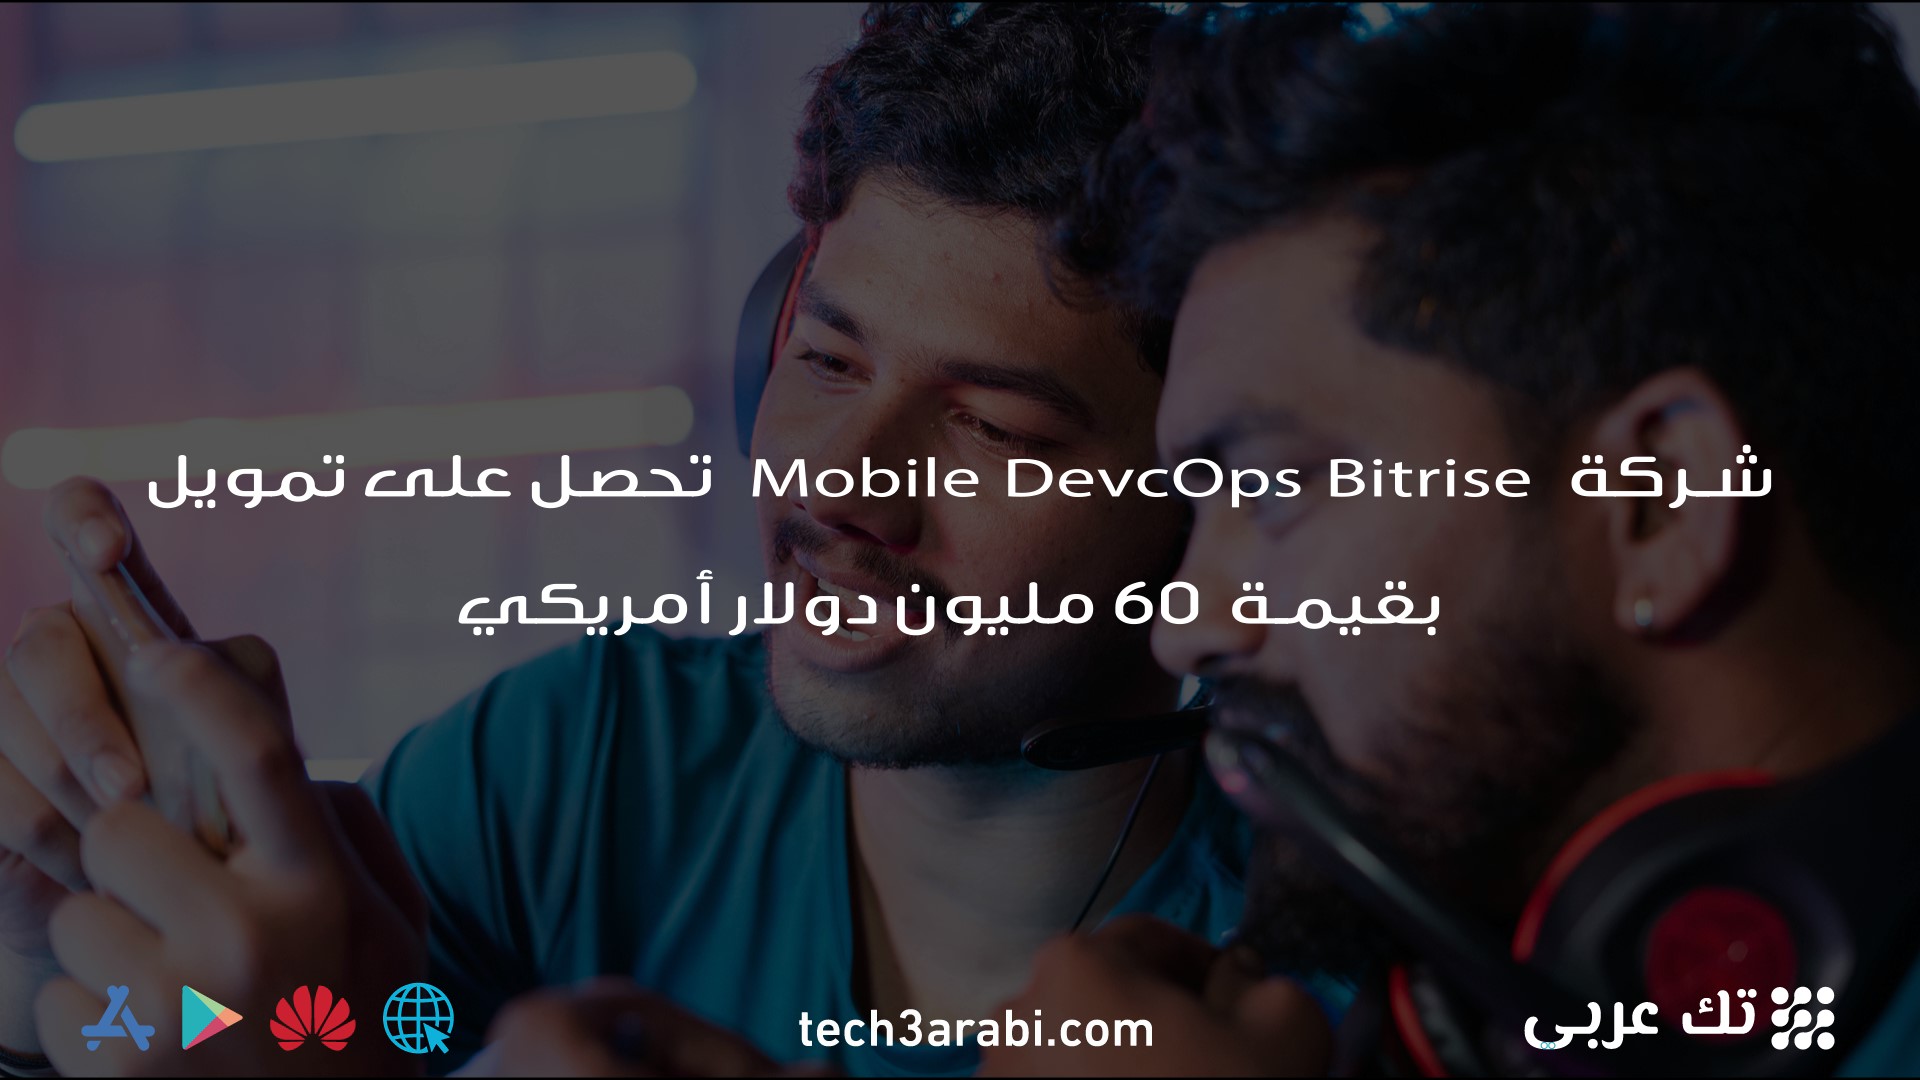 شركة Mobile DevcOps Bitrise تحصل على تمويل بقيمة 60 مليون دولار أمريكي